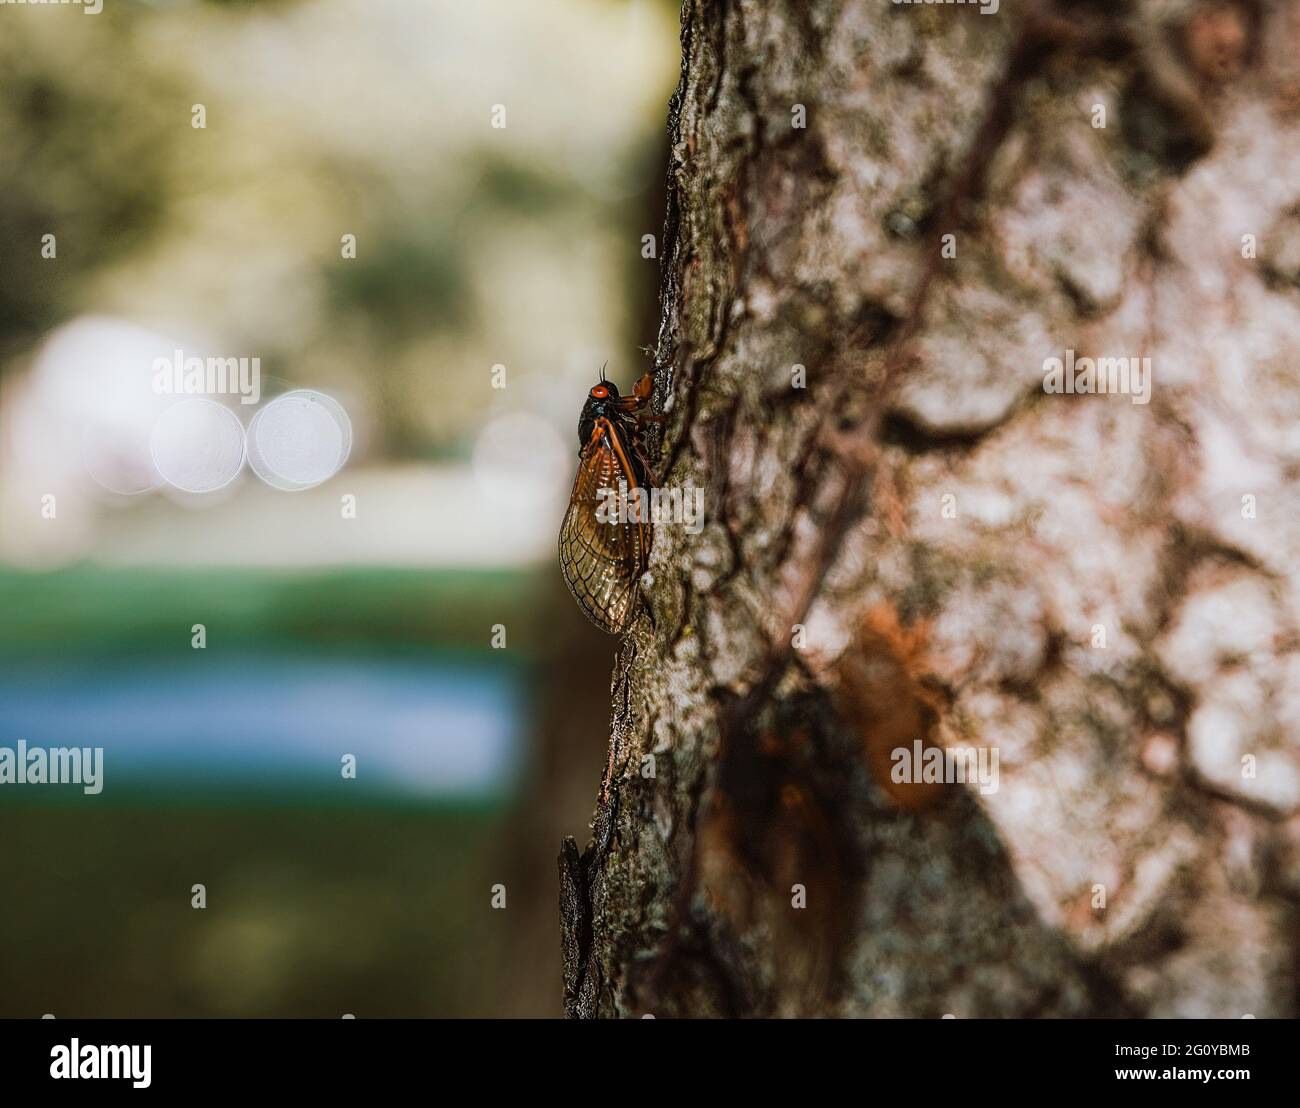 Kettering, Ohio, États-Unis. 25 mai 2021. Brood X cicada vu sur un arbre dans Kettering.réputé ''périodique'' cicadas, ces insectes ont émergé après avoir été souterrains pendant 17 ans. Actuellement, ils peuvent être trouvés sur des surfaces à travers le comté de Montgomery, Ohio. Crédit : Whitney Saleski/SOPA Images/ZUMA Wire/Alay Live News Banque D'Images